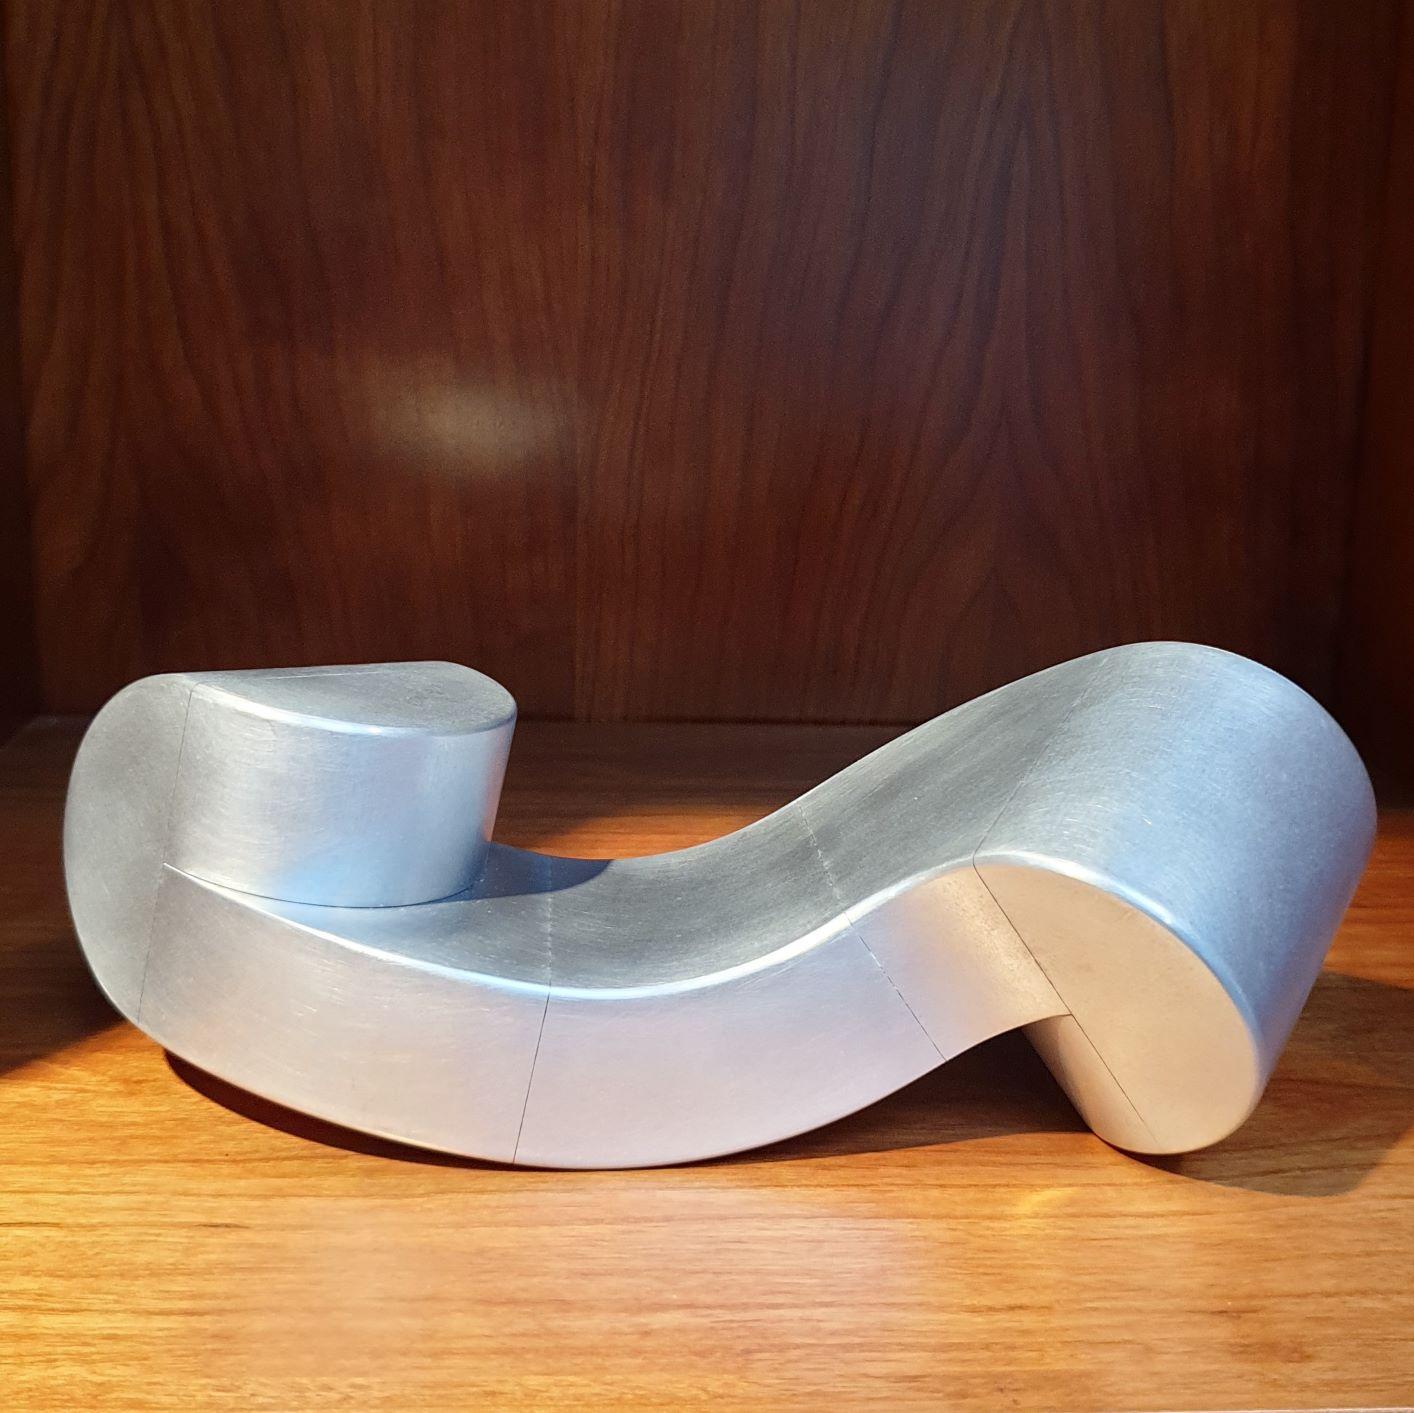 Banc - sculpture géométrique abstraite moderne contemporaine et contemporaine en aluminium